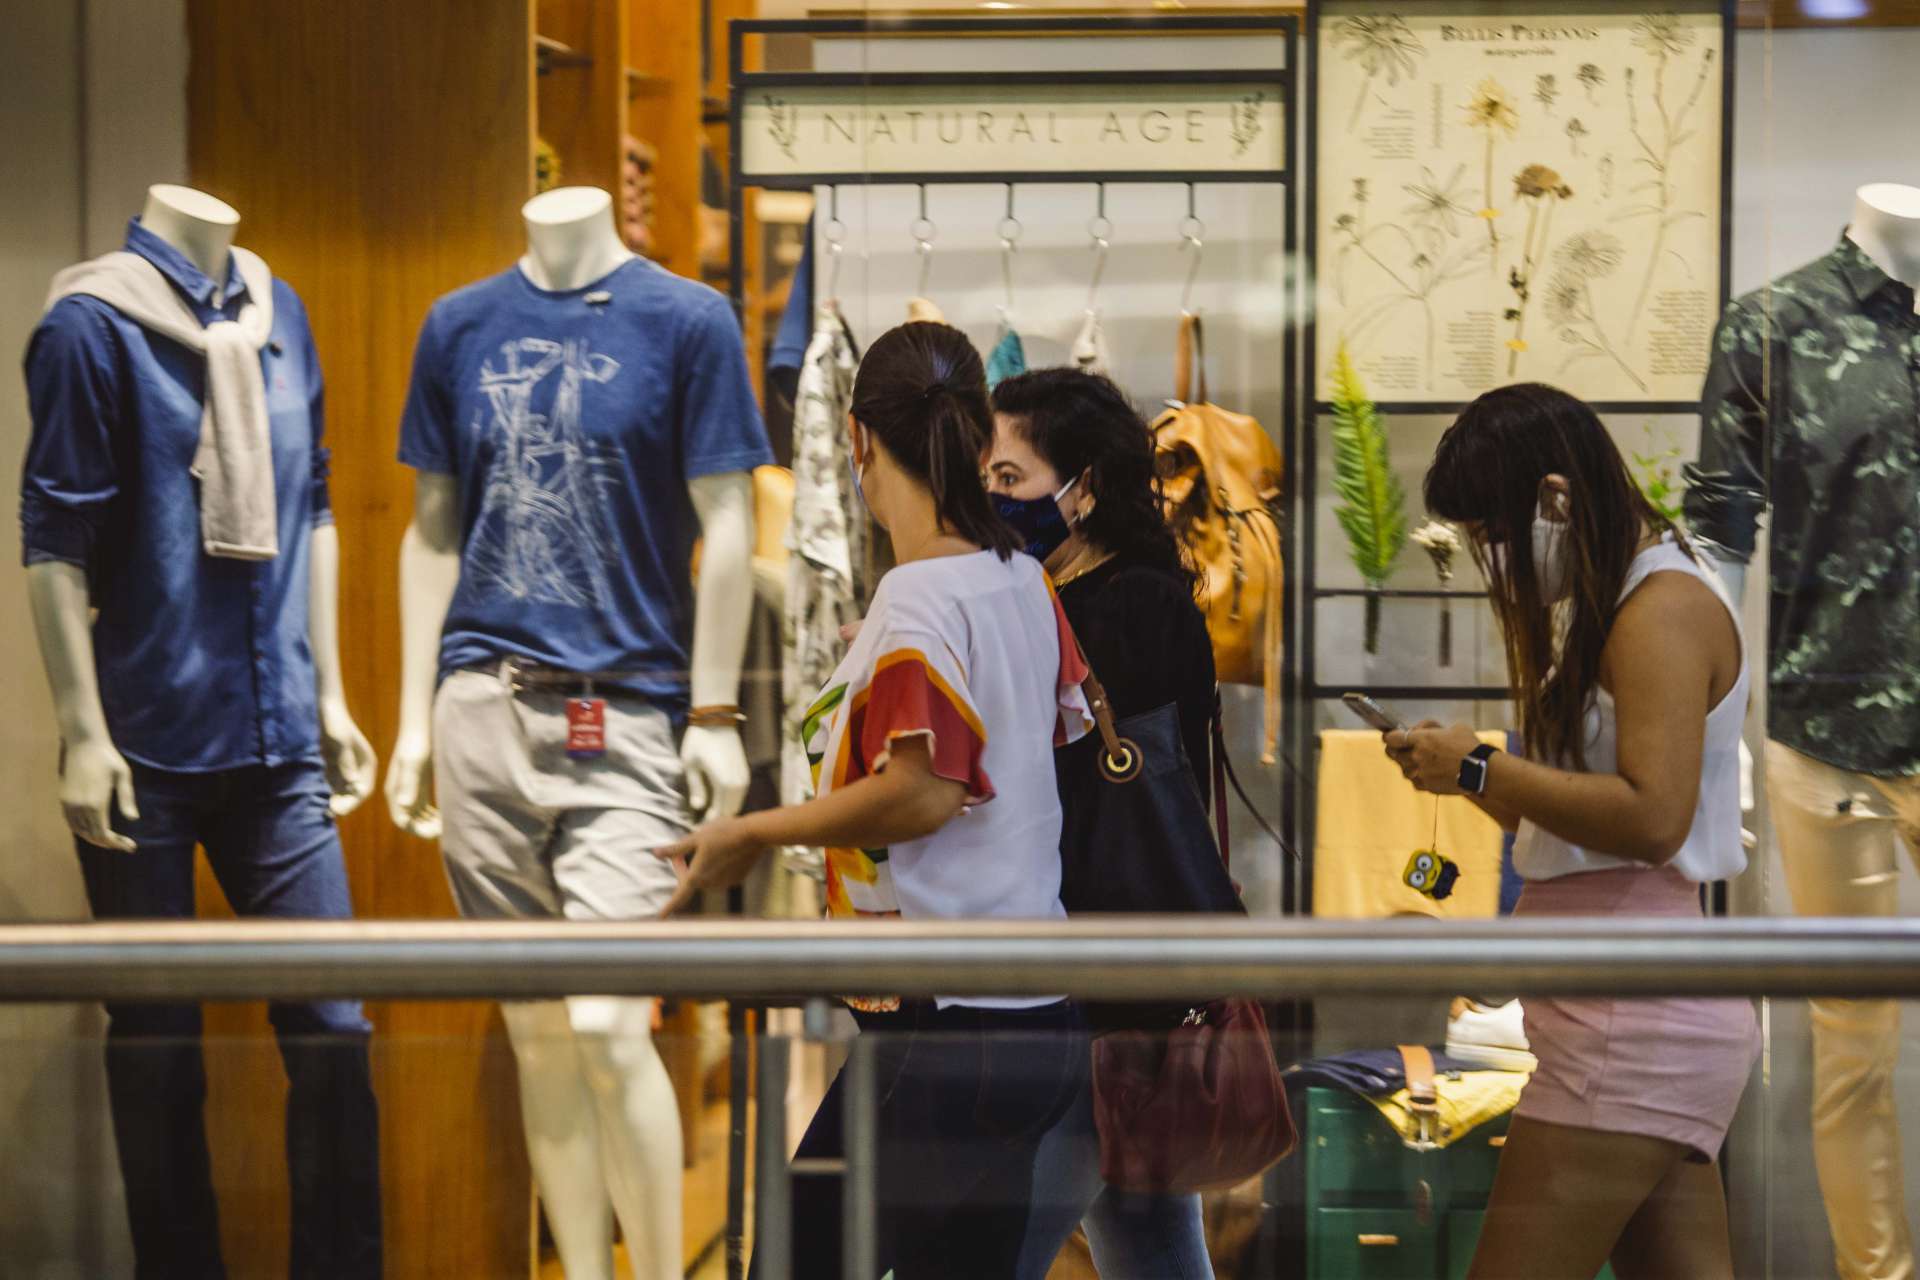 FORTALEZA, CE, BRASIL, 15-06-2020: Movimentação no Shopping Iguatemi, pessoas fazem compras em shopping Iguatemi em pandemia. Em época de Covid-19. (Foto: Aurélio Alves/O POVO) (Foto: Aurelio Alves/ O POVO)